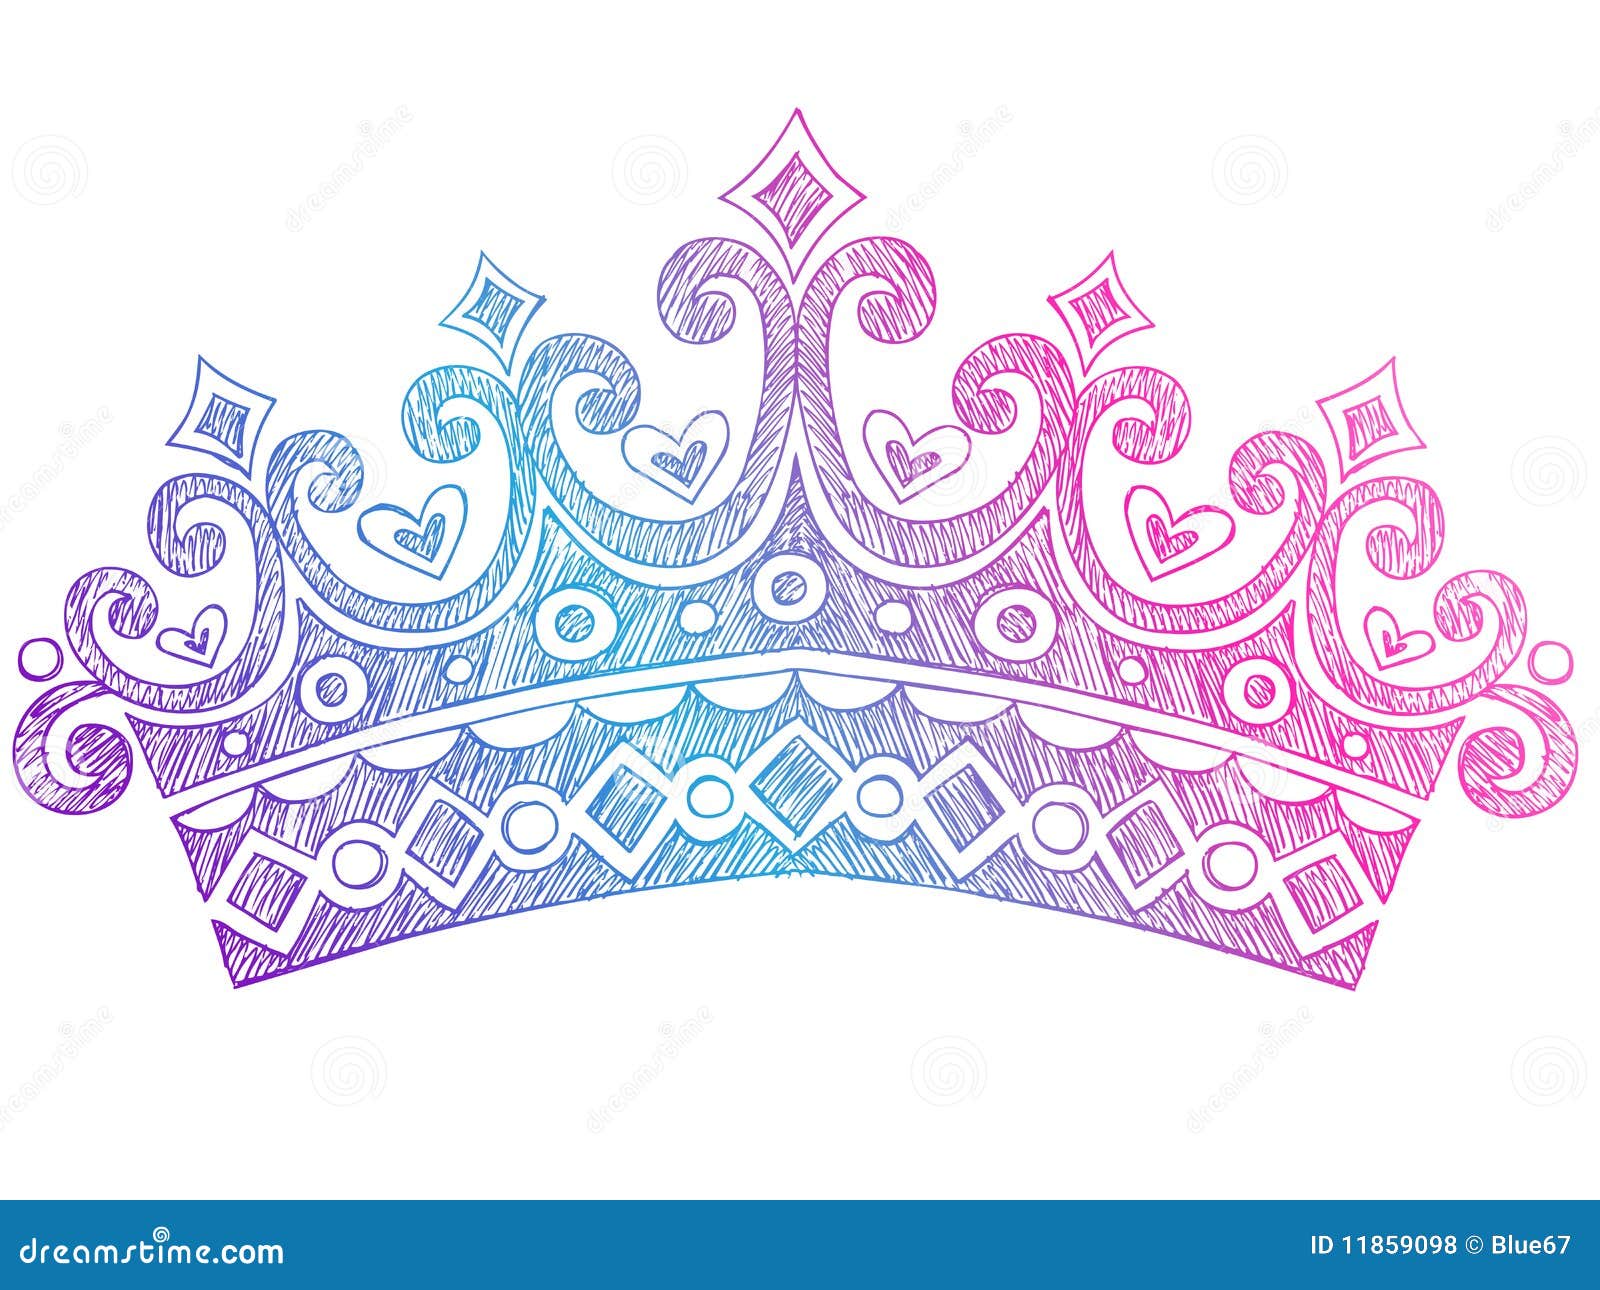 sketchy princess tiara crown notebook doodles